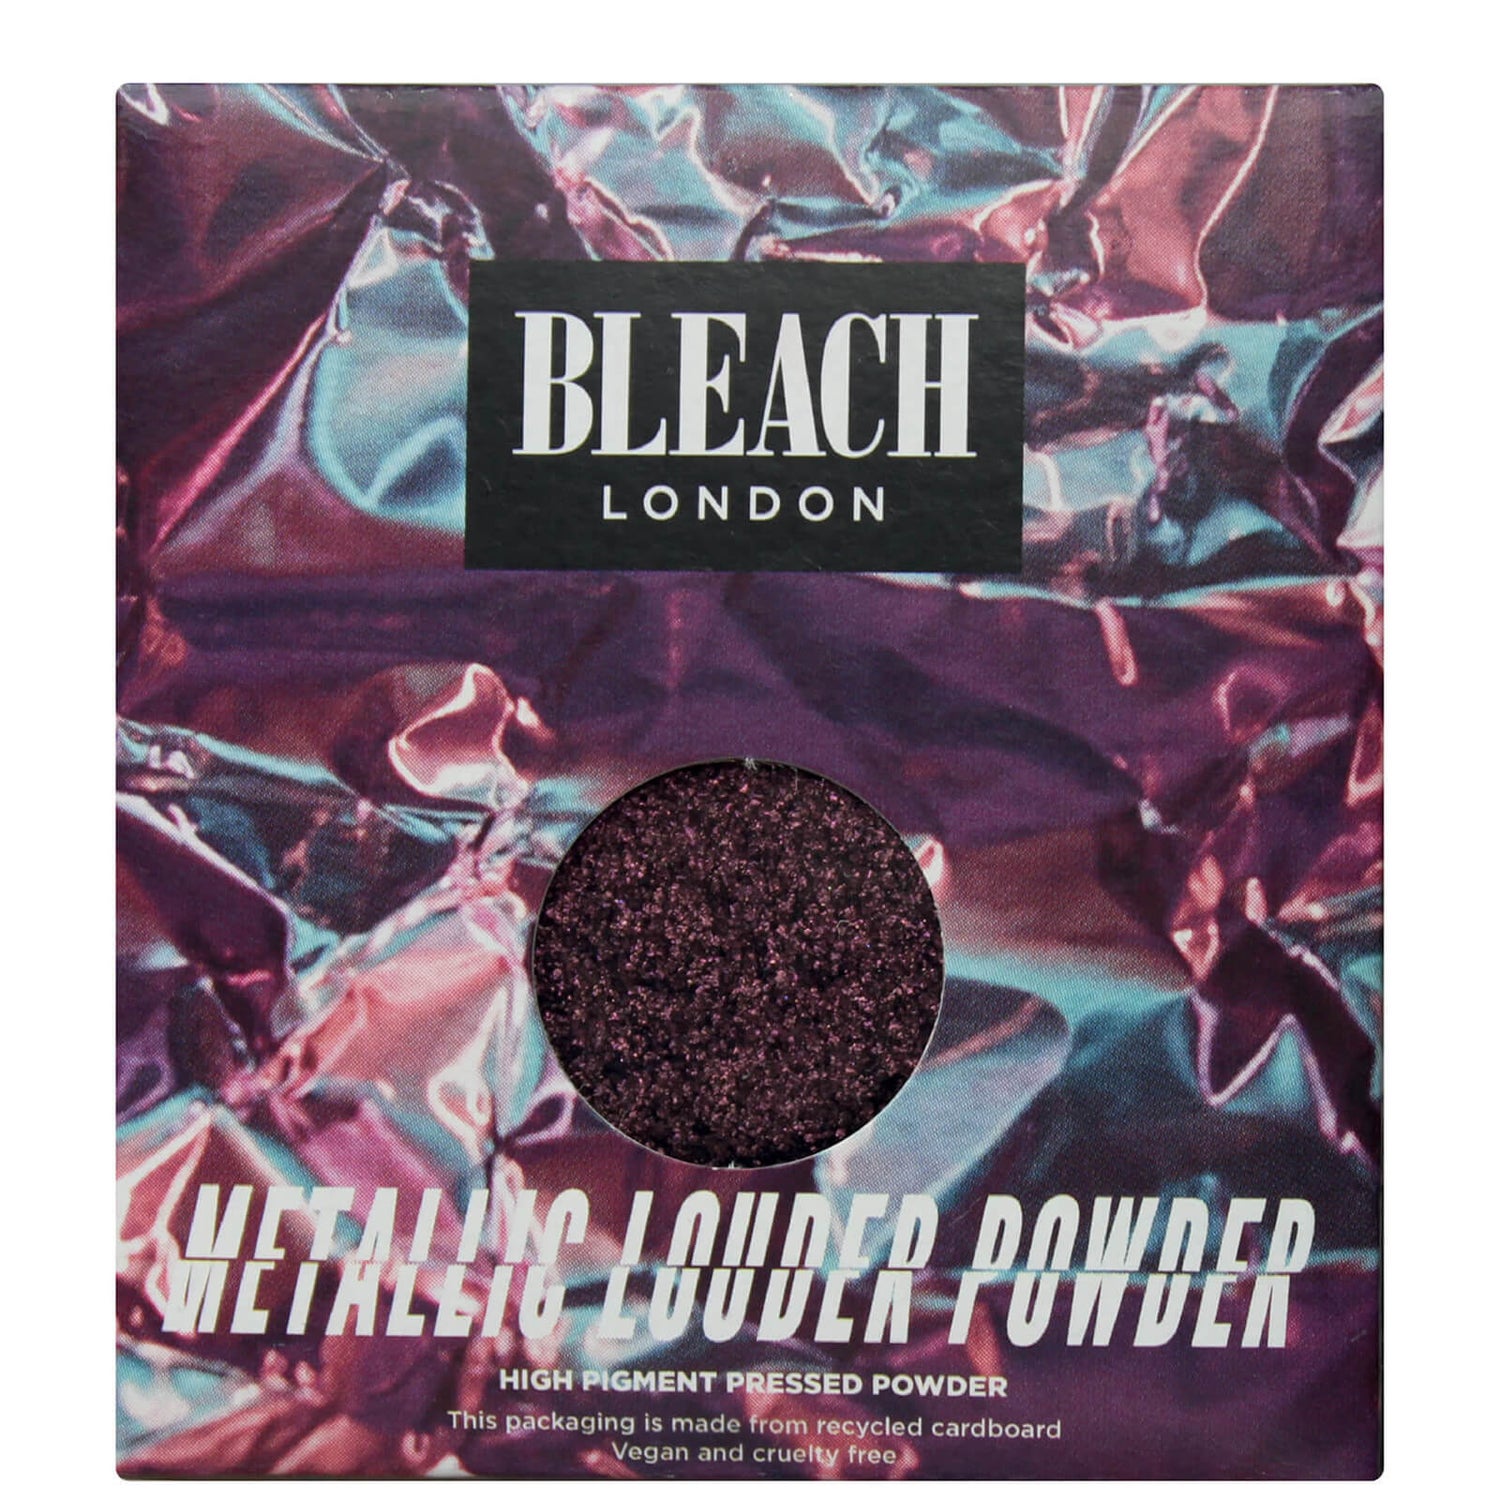 BLEACH LONDON Metallic Louder Powder ombretto Bv 5 Me